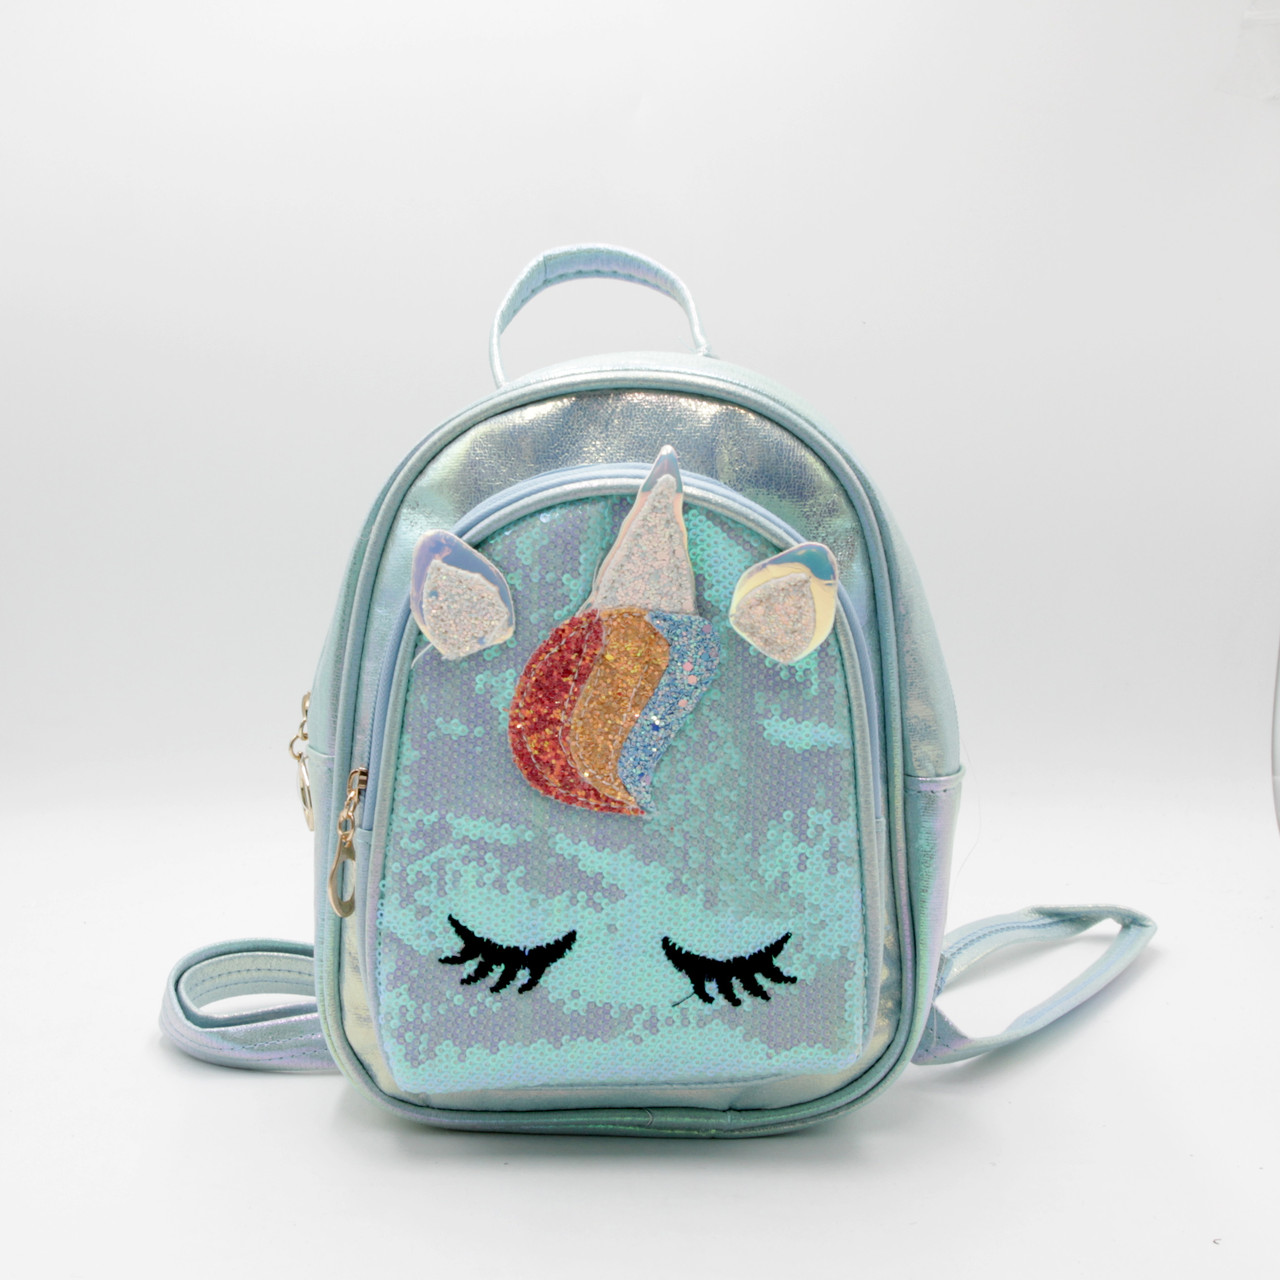 Дитячий рюкзак блискучий, Стильний рюкзак для дівчинки з паєтками, Рюкзак дитячий з паєтками Єдиноріг 0701 т! +